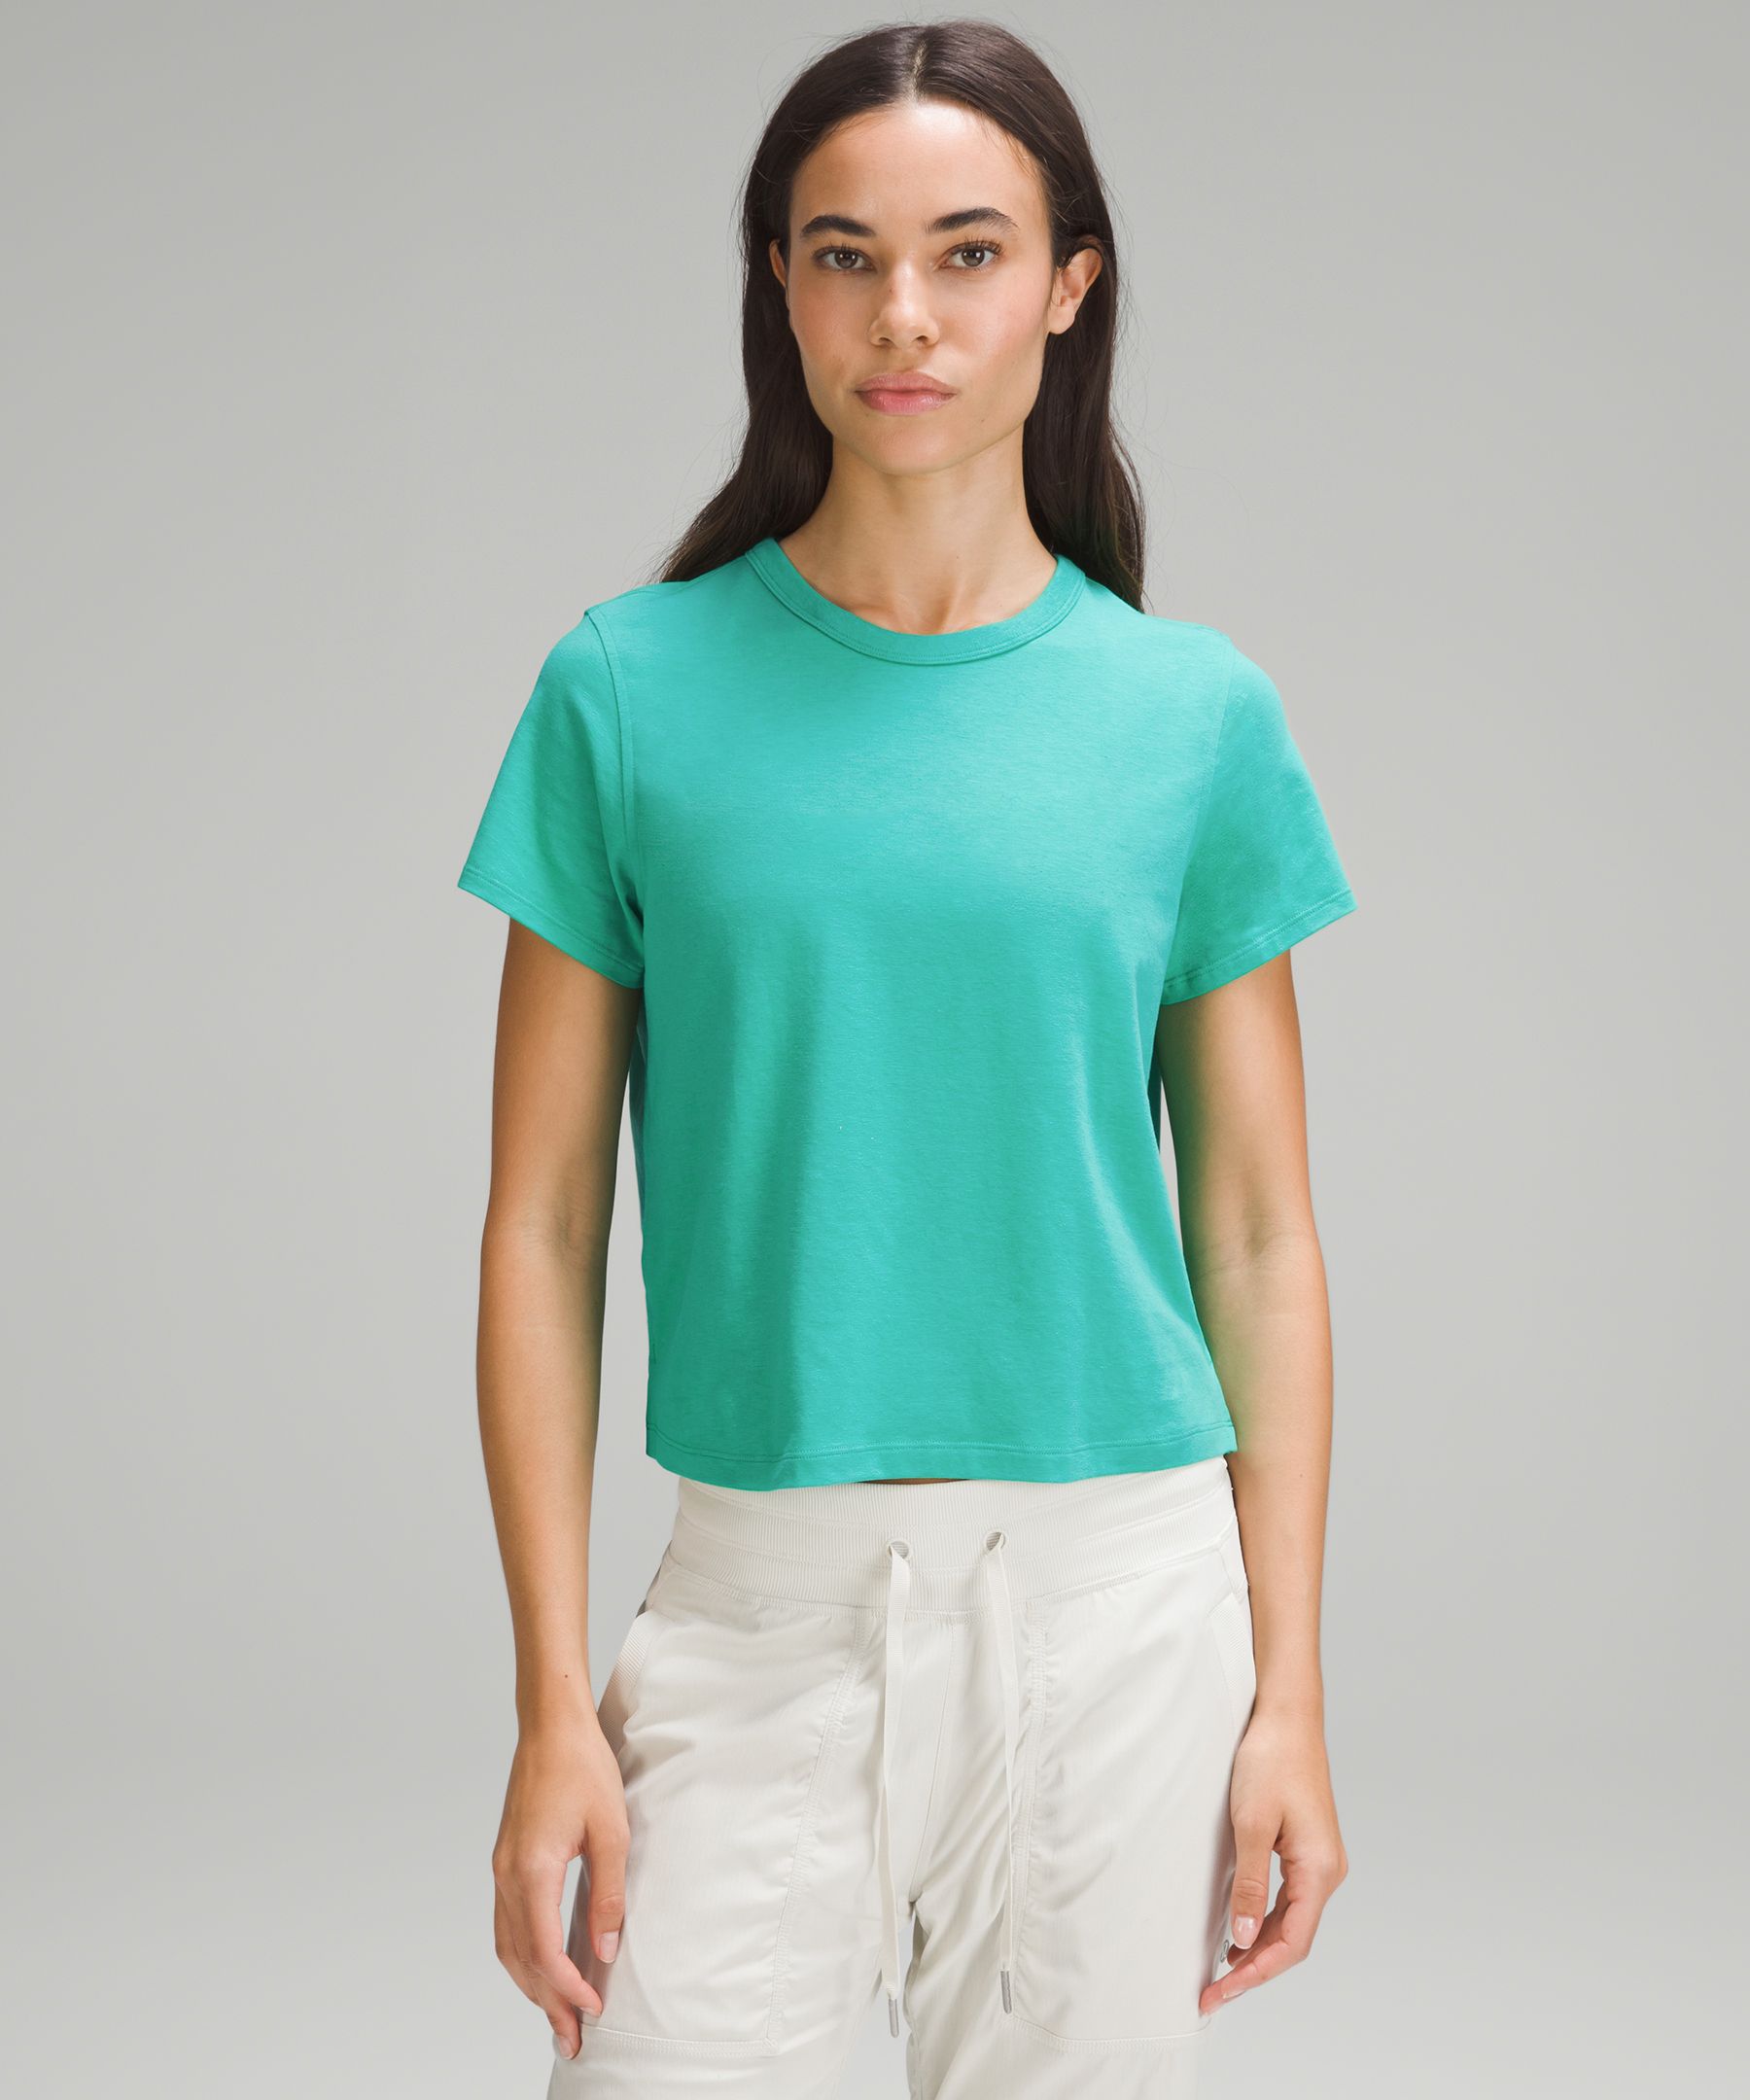 Lululemon Classic-Fit Cotton-Blend T-Shirt. 1